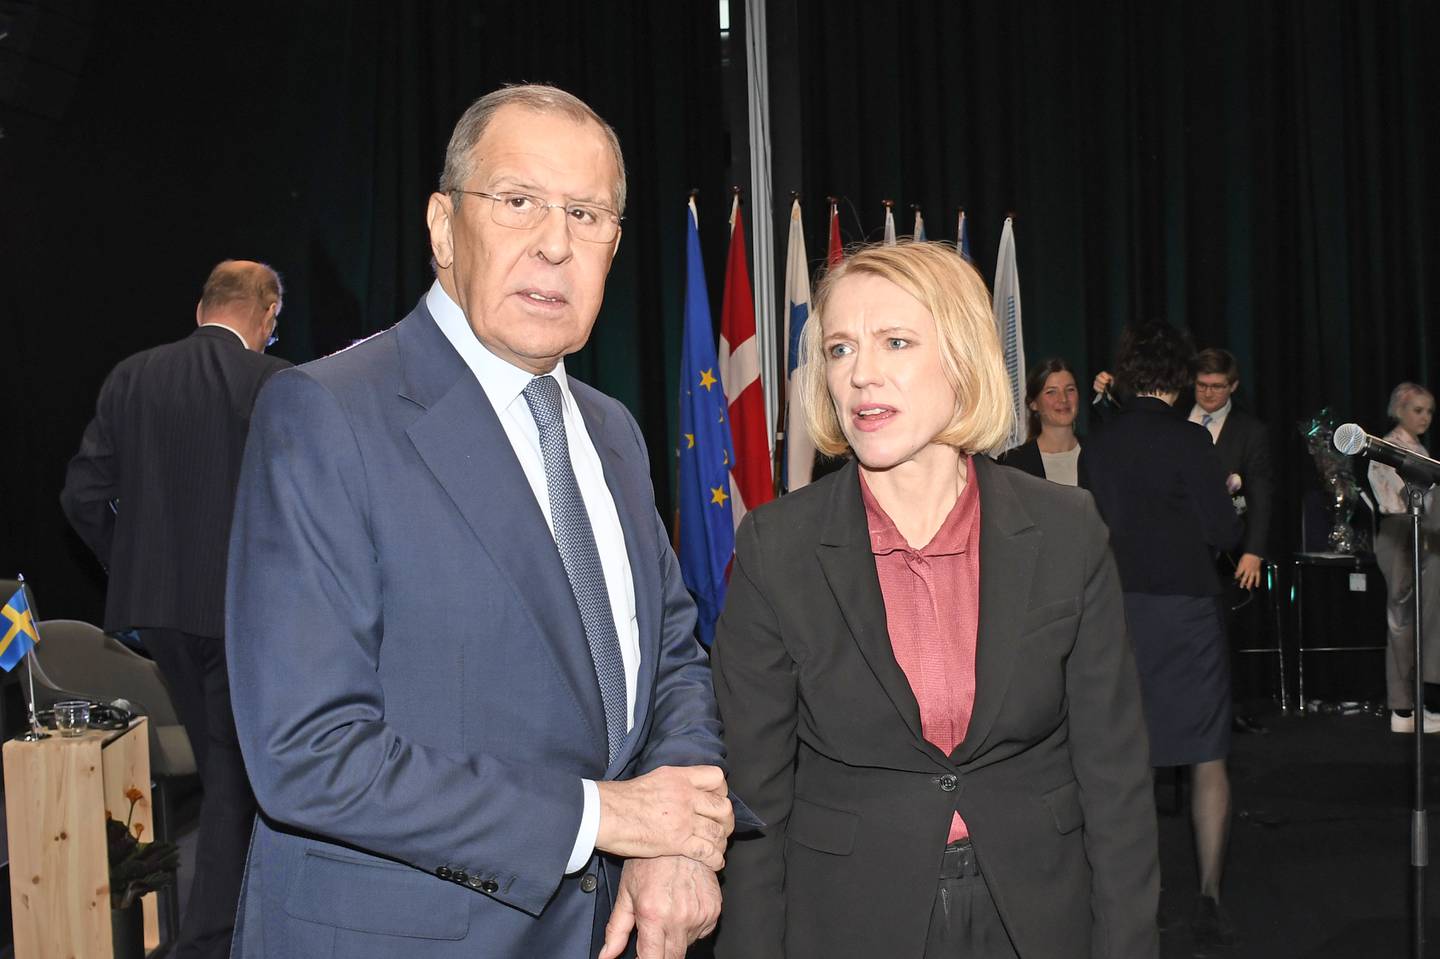 Utenriksminister Anniken Huitfeldt møtte Russlands utenriksmister Sergej Lavrov under møtet i Barentsrådet i Tromsø høsten 2021.